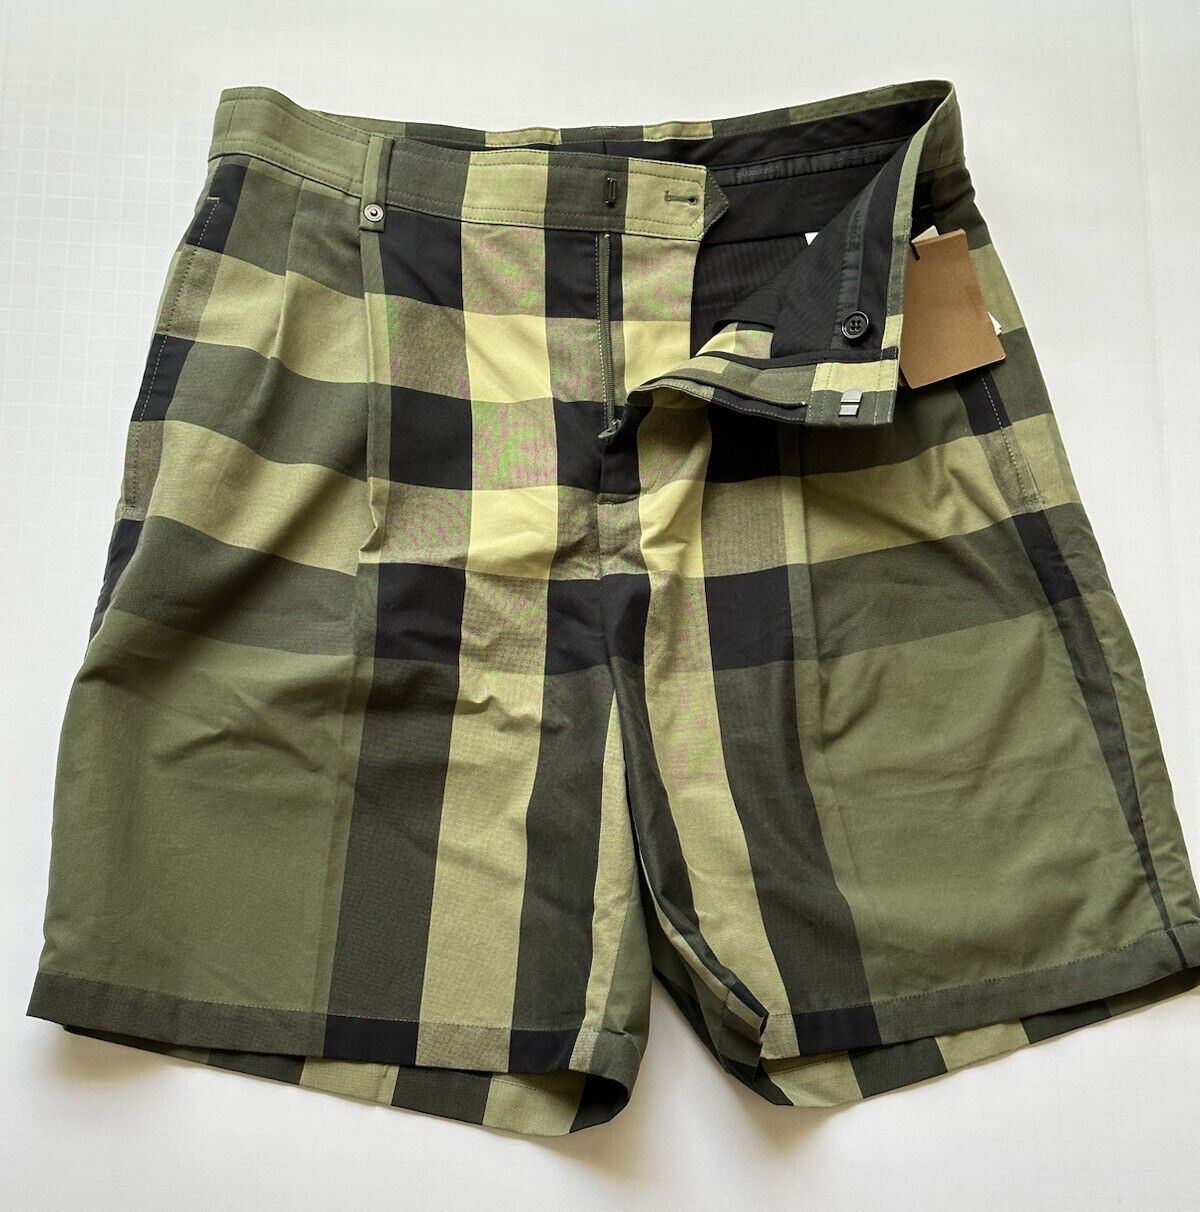 Neu mit Etikett: 590 $ Burberry Herren-Shorts aus militärisch grün karierter Baumwolle, 38 US (32,5 Zoll) 8042781 